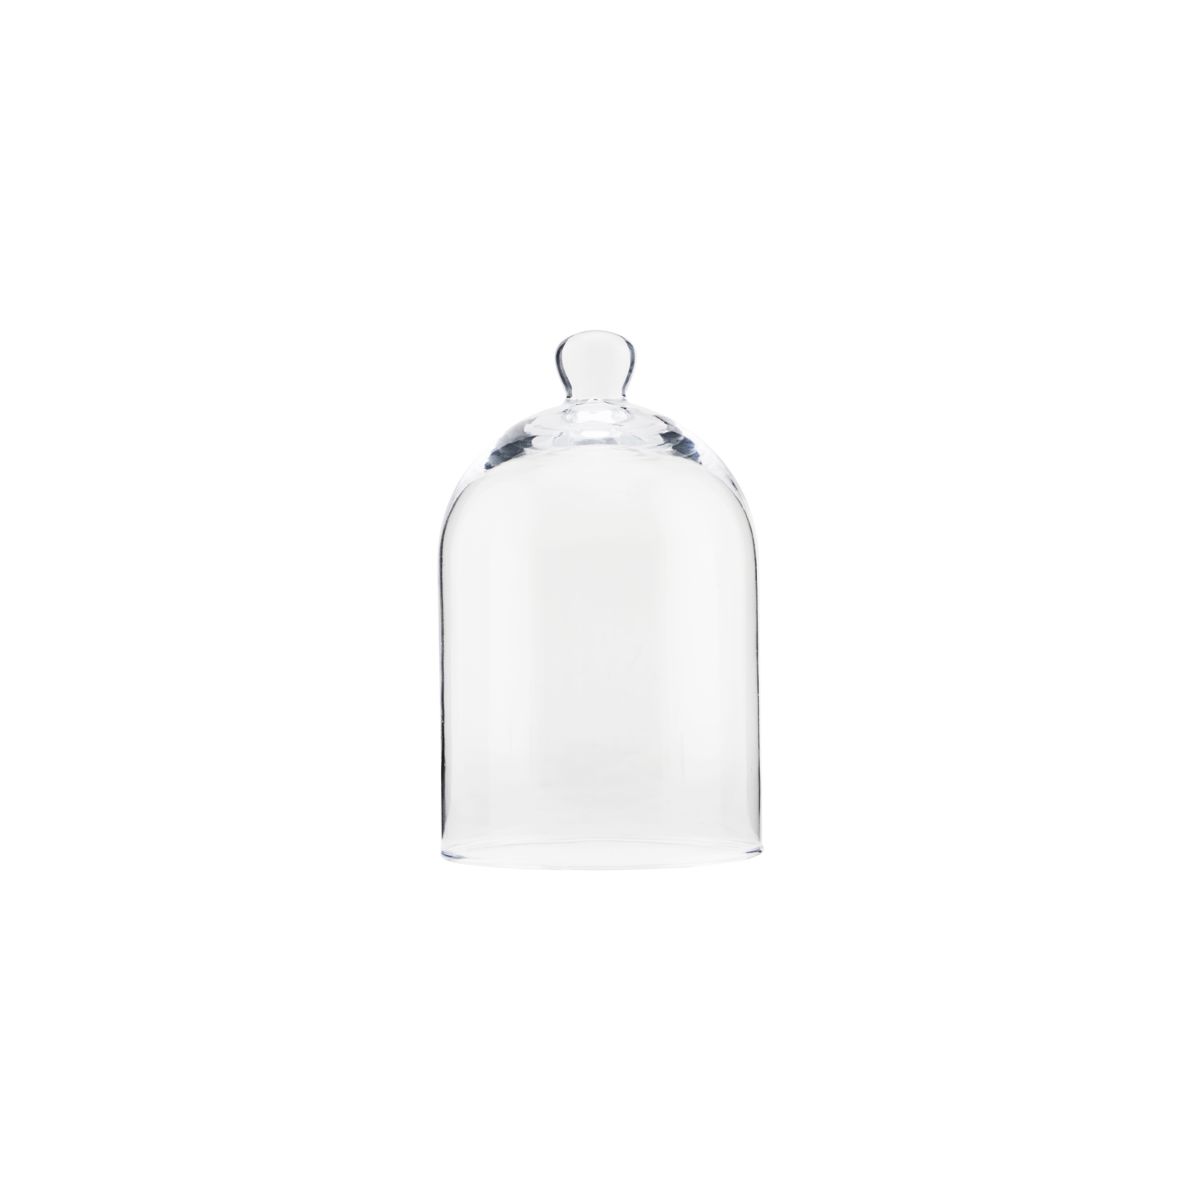 Meraki Glass Bell (Small)